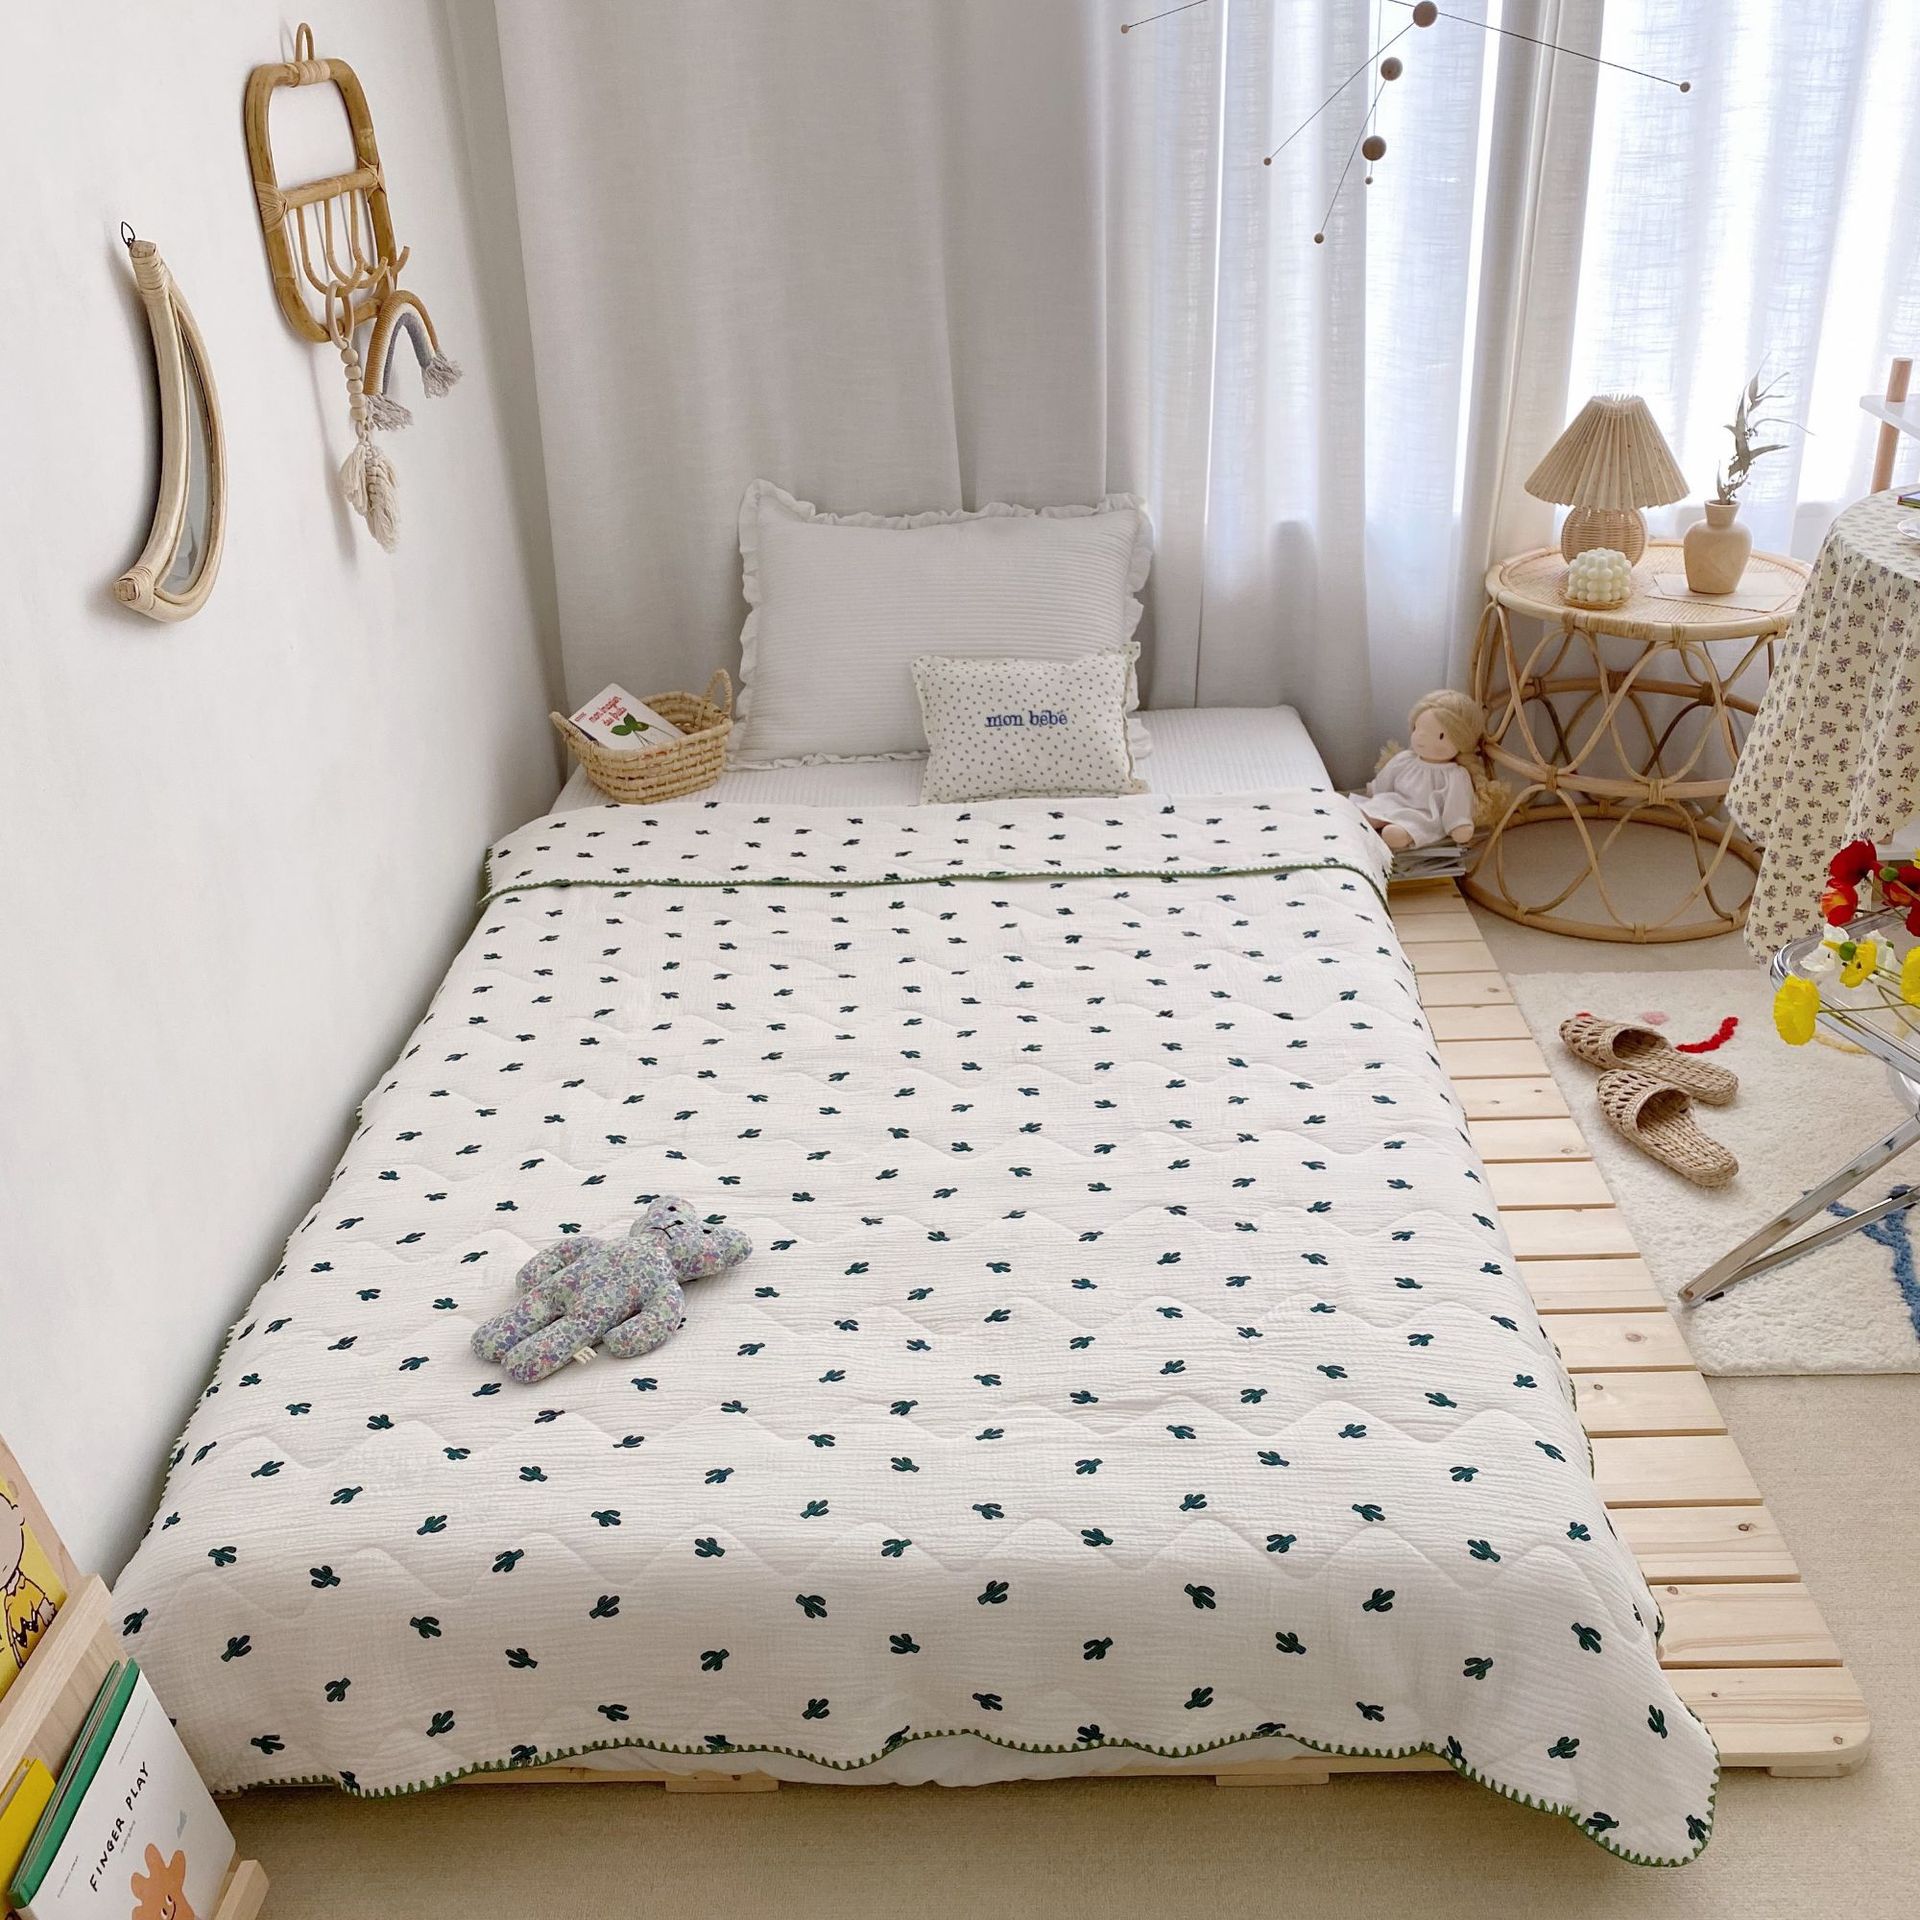 95*115cm sommerdyner til børn 100%  luftgennemtrængelighedstæpper i bomuld til hjemmet børnehave skolebørn sengetøj: Kaktus